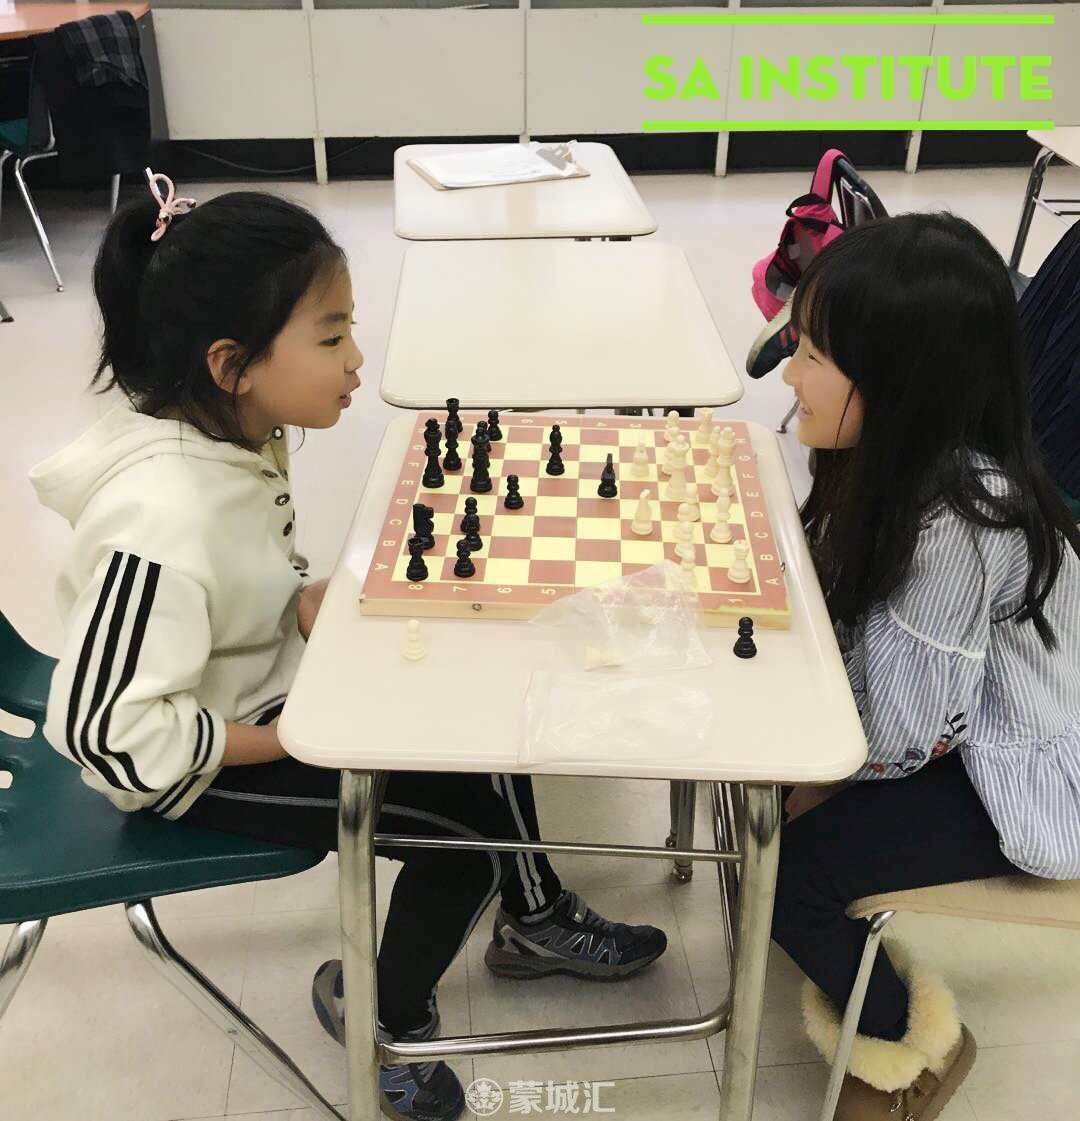 chess 2.jpg